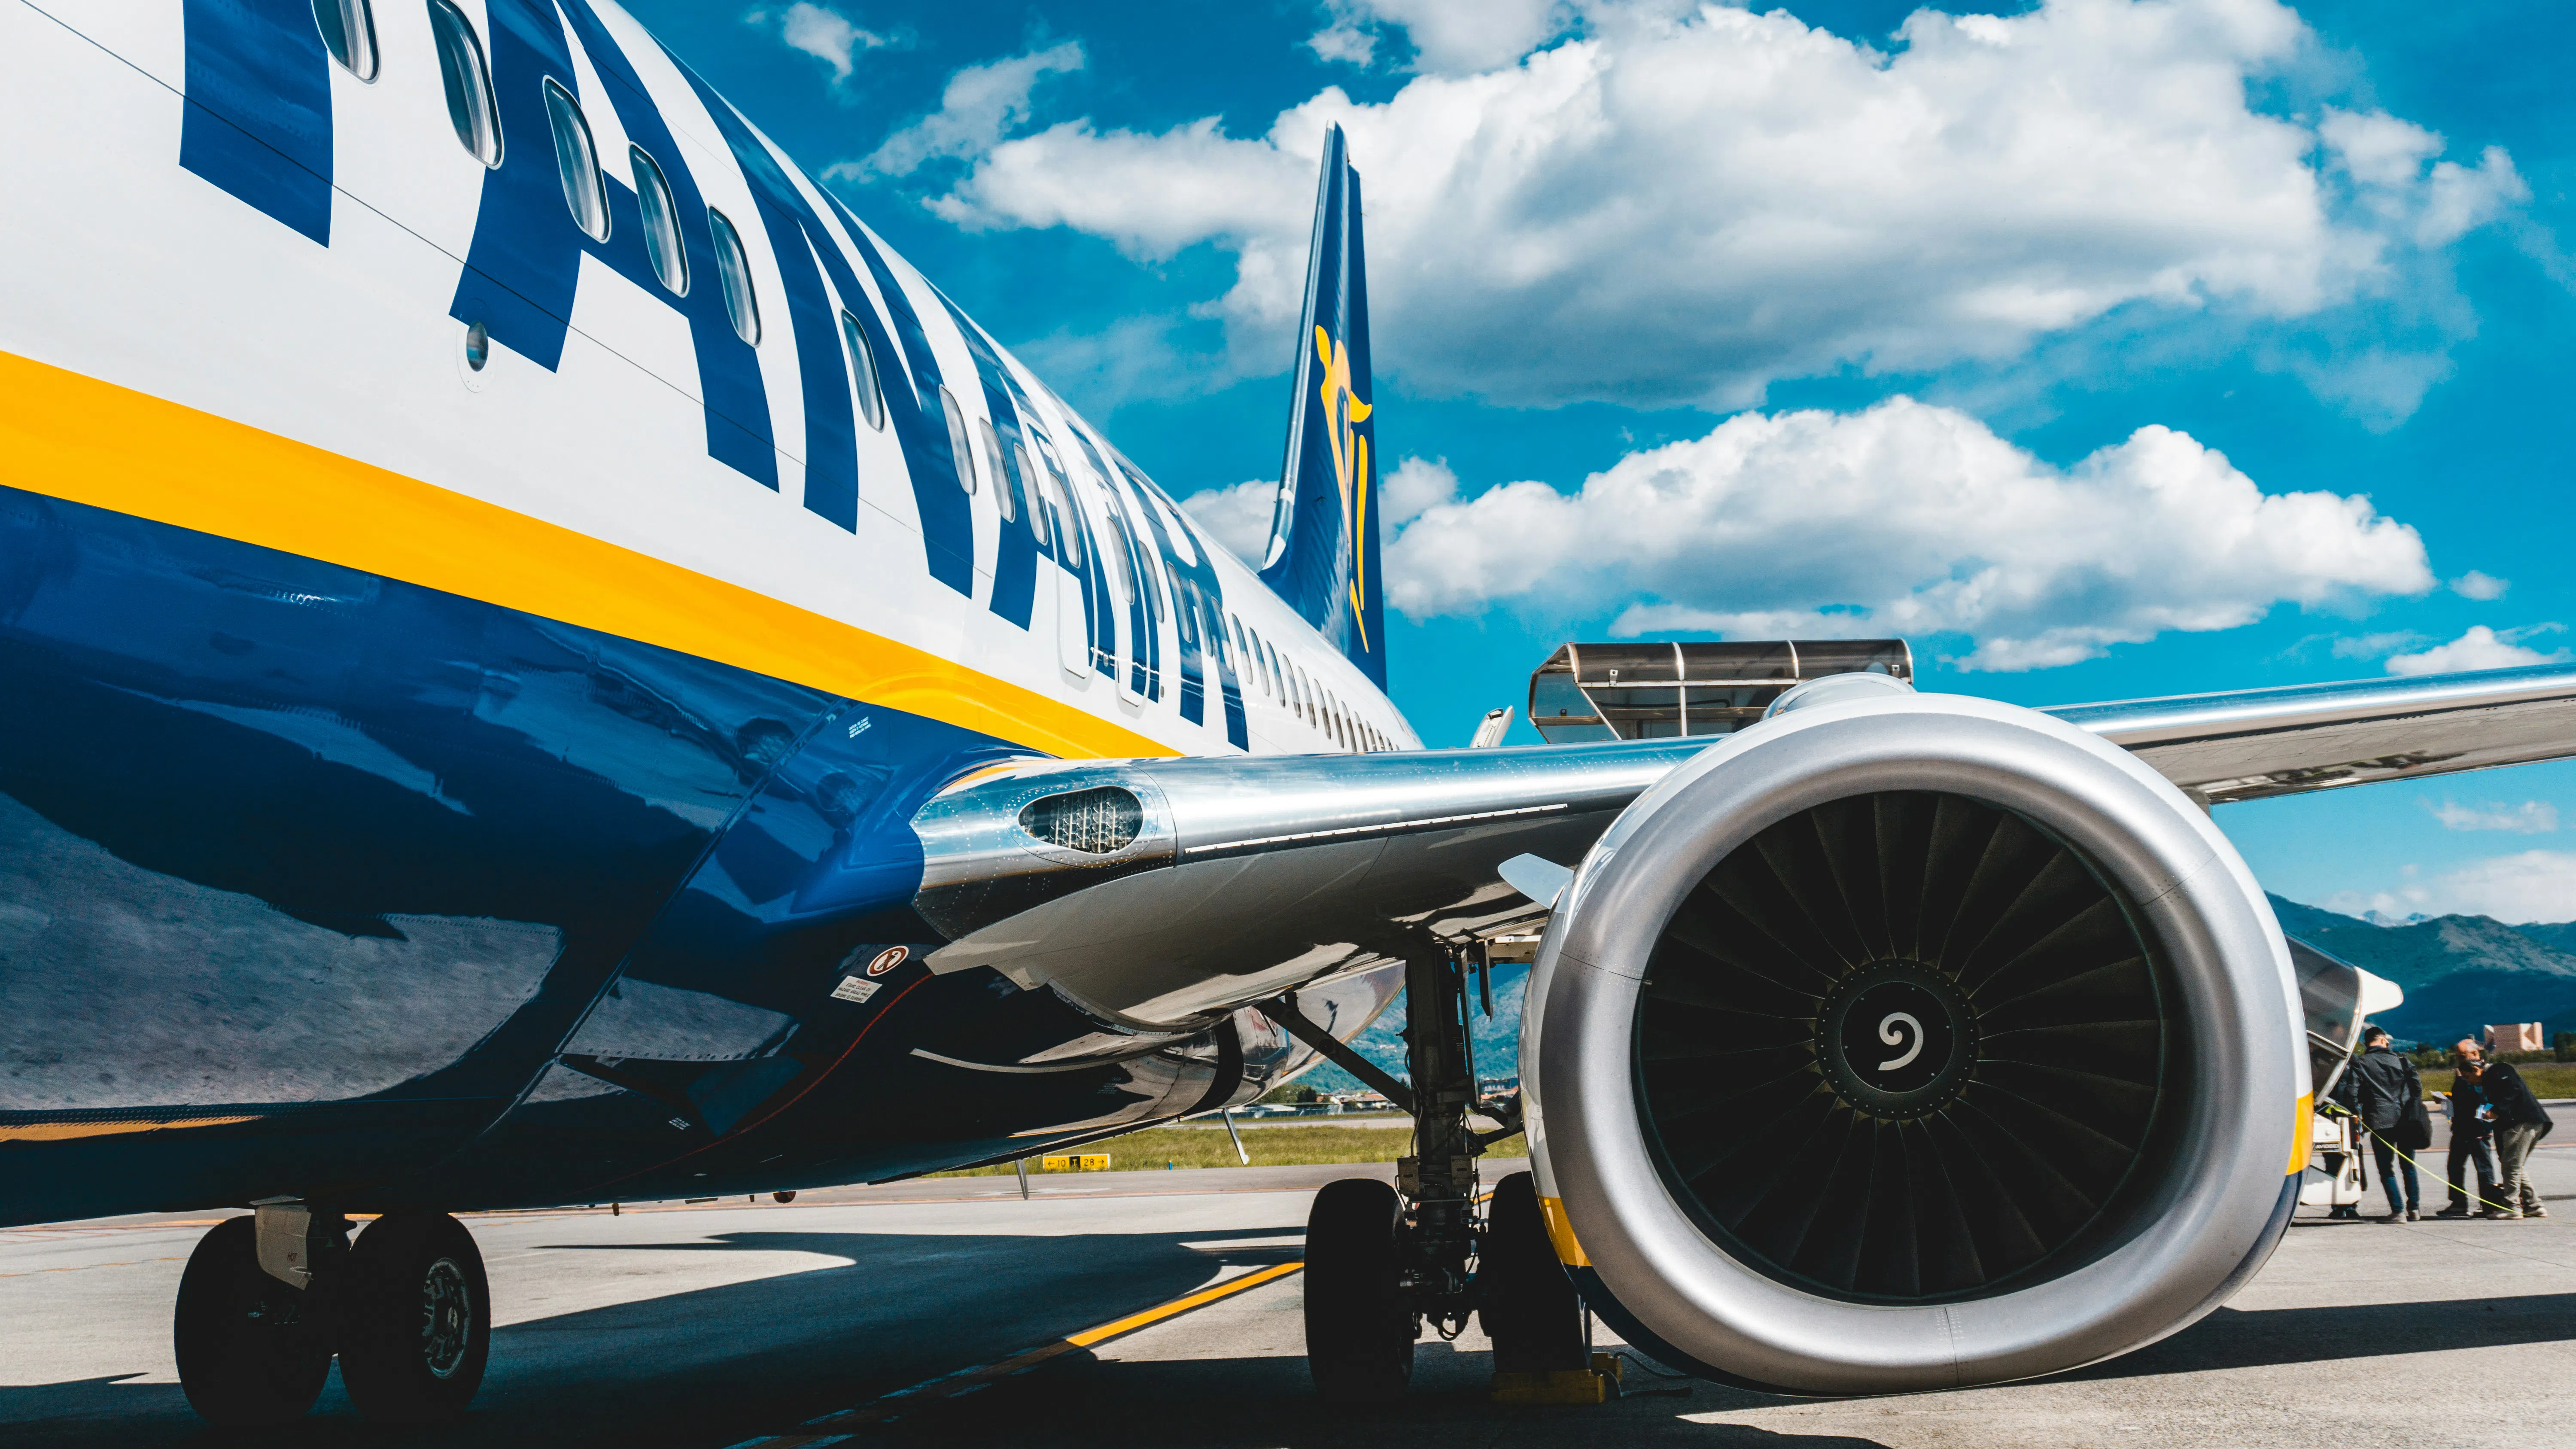 Годишната печалба на Ryanair скача с 34% благодарение на увеличено търсене и по-високи цени на билетите